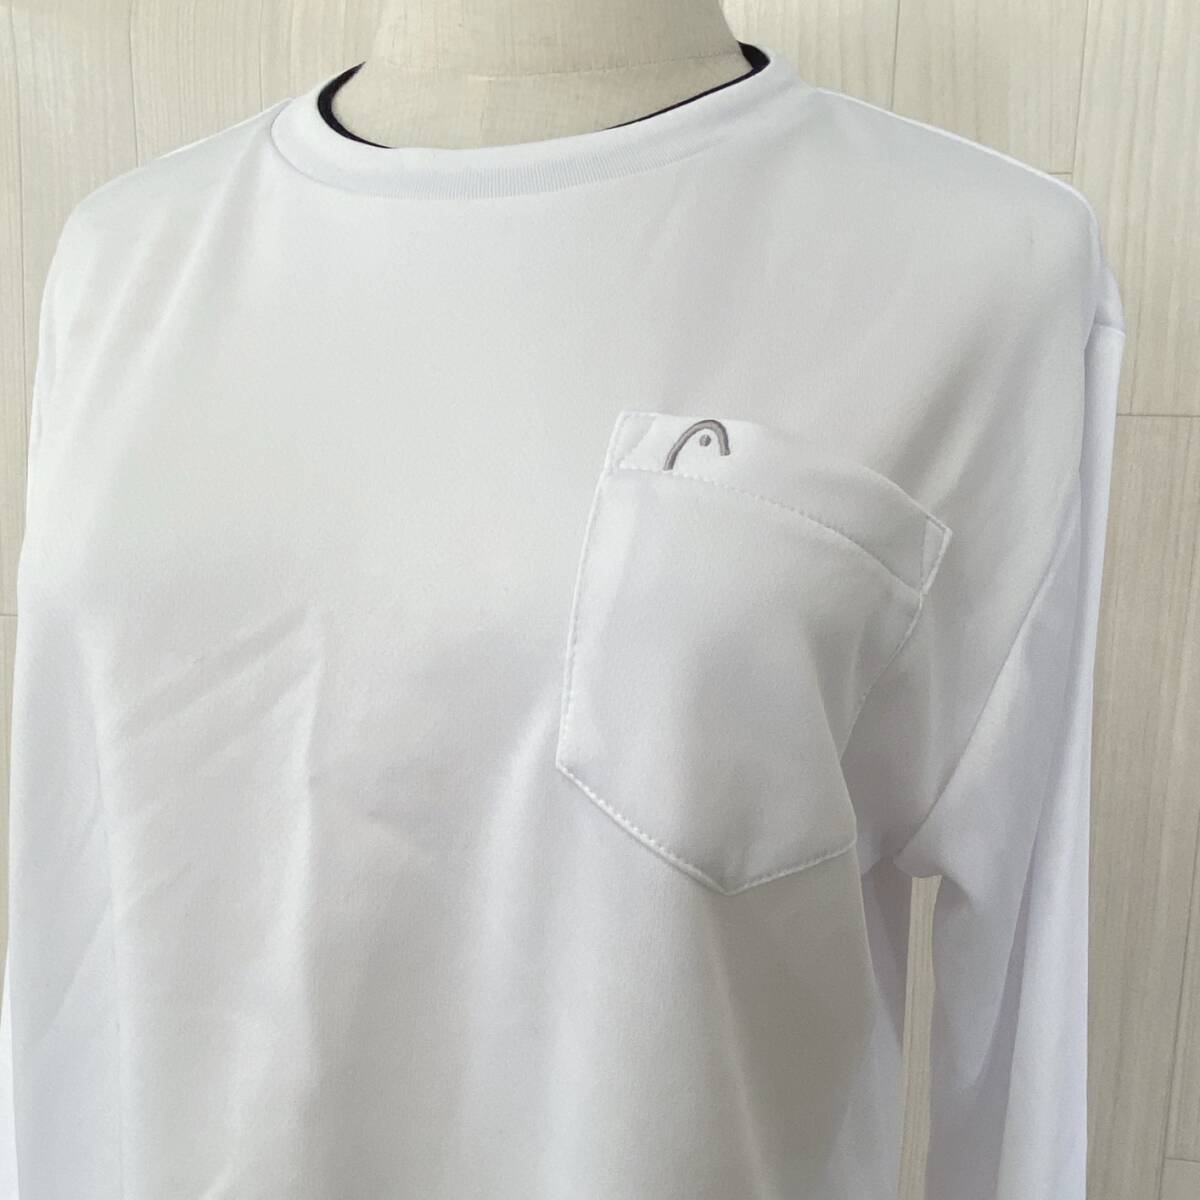 Z1535 HEAD メンズ 長袖 Tシャツ スポーツウェア ロンT Mサイズ ホワイト 白 万能 カジュアルスタイル スポーティーコーデ 薄手 USED 古着_画像5